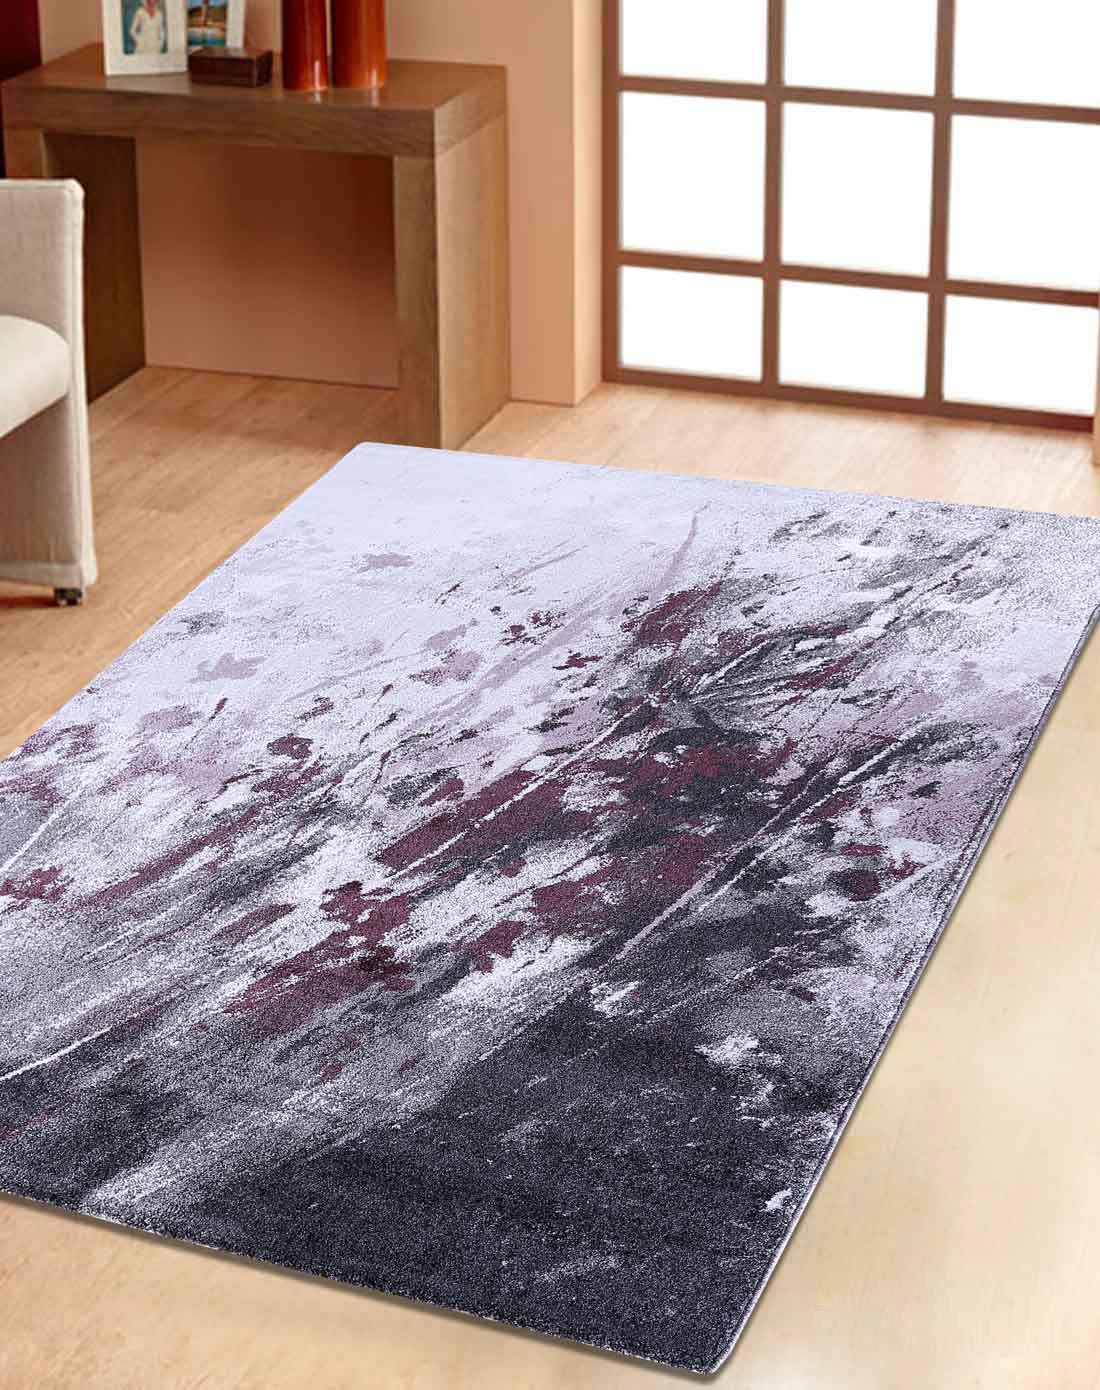 特惠秋意土耳其地毯80*120cm(多款可选)